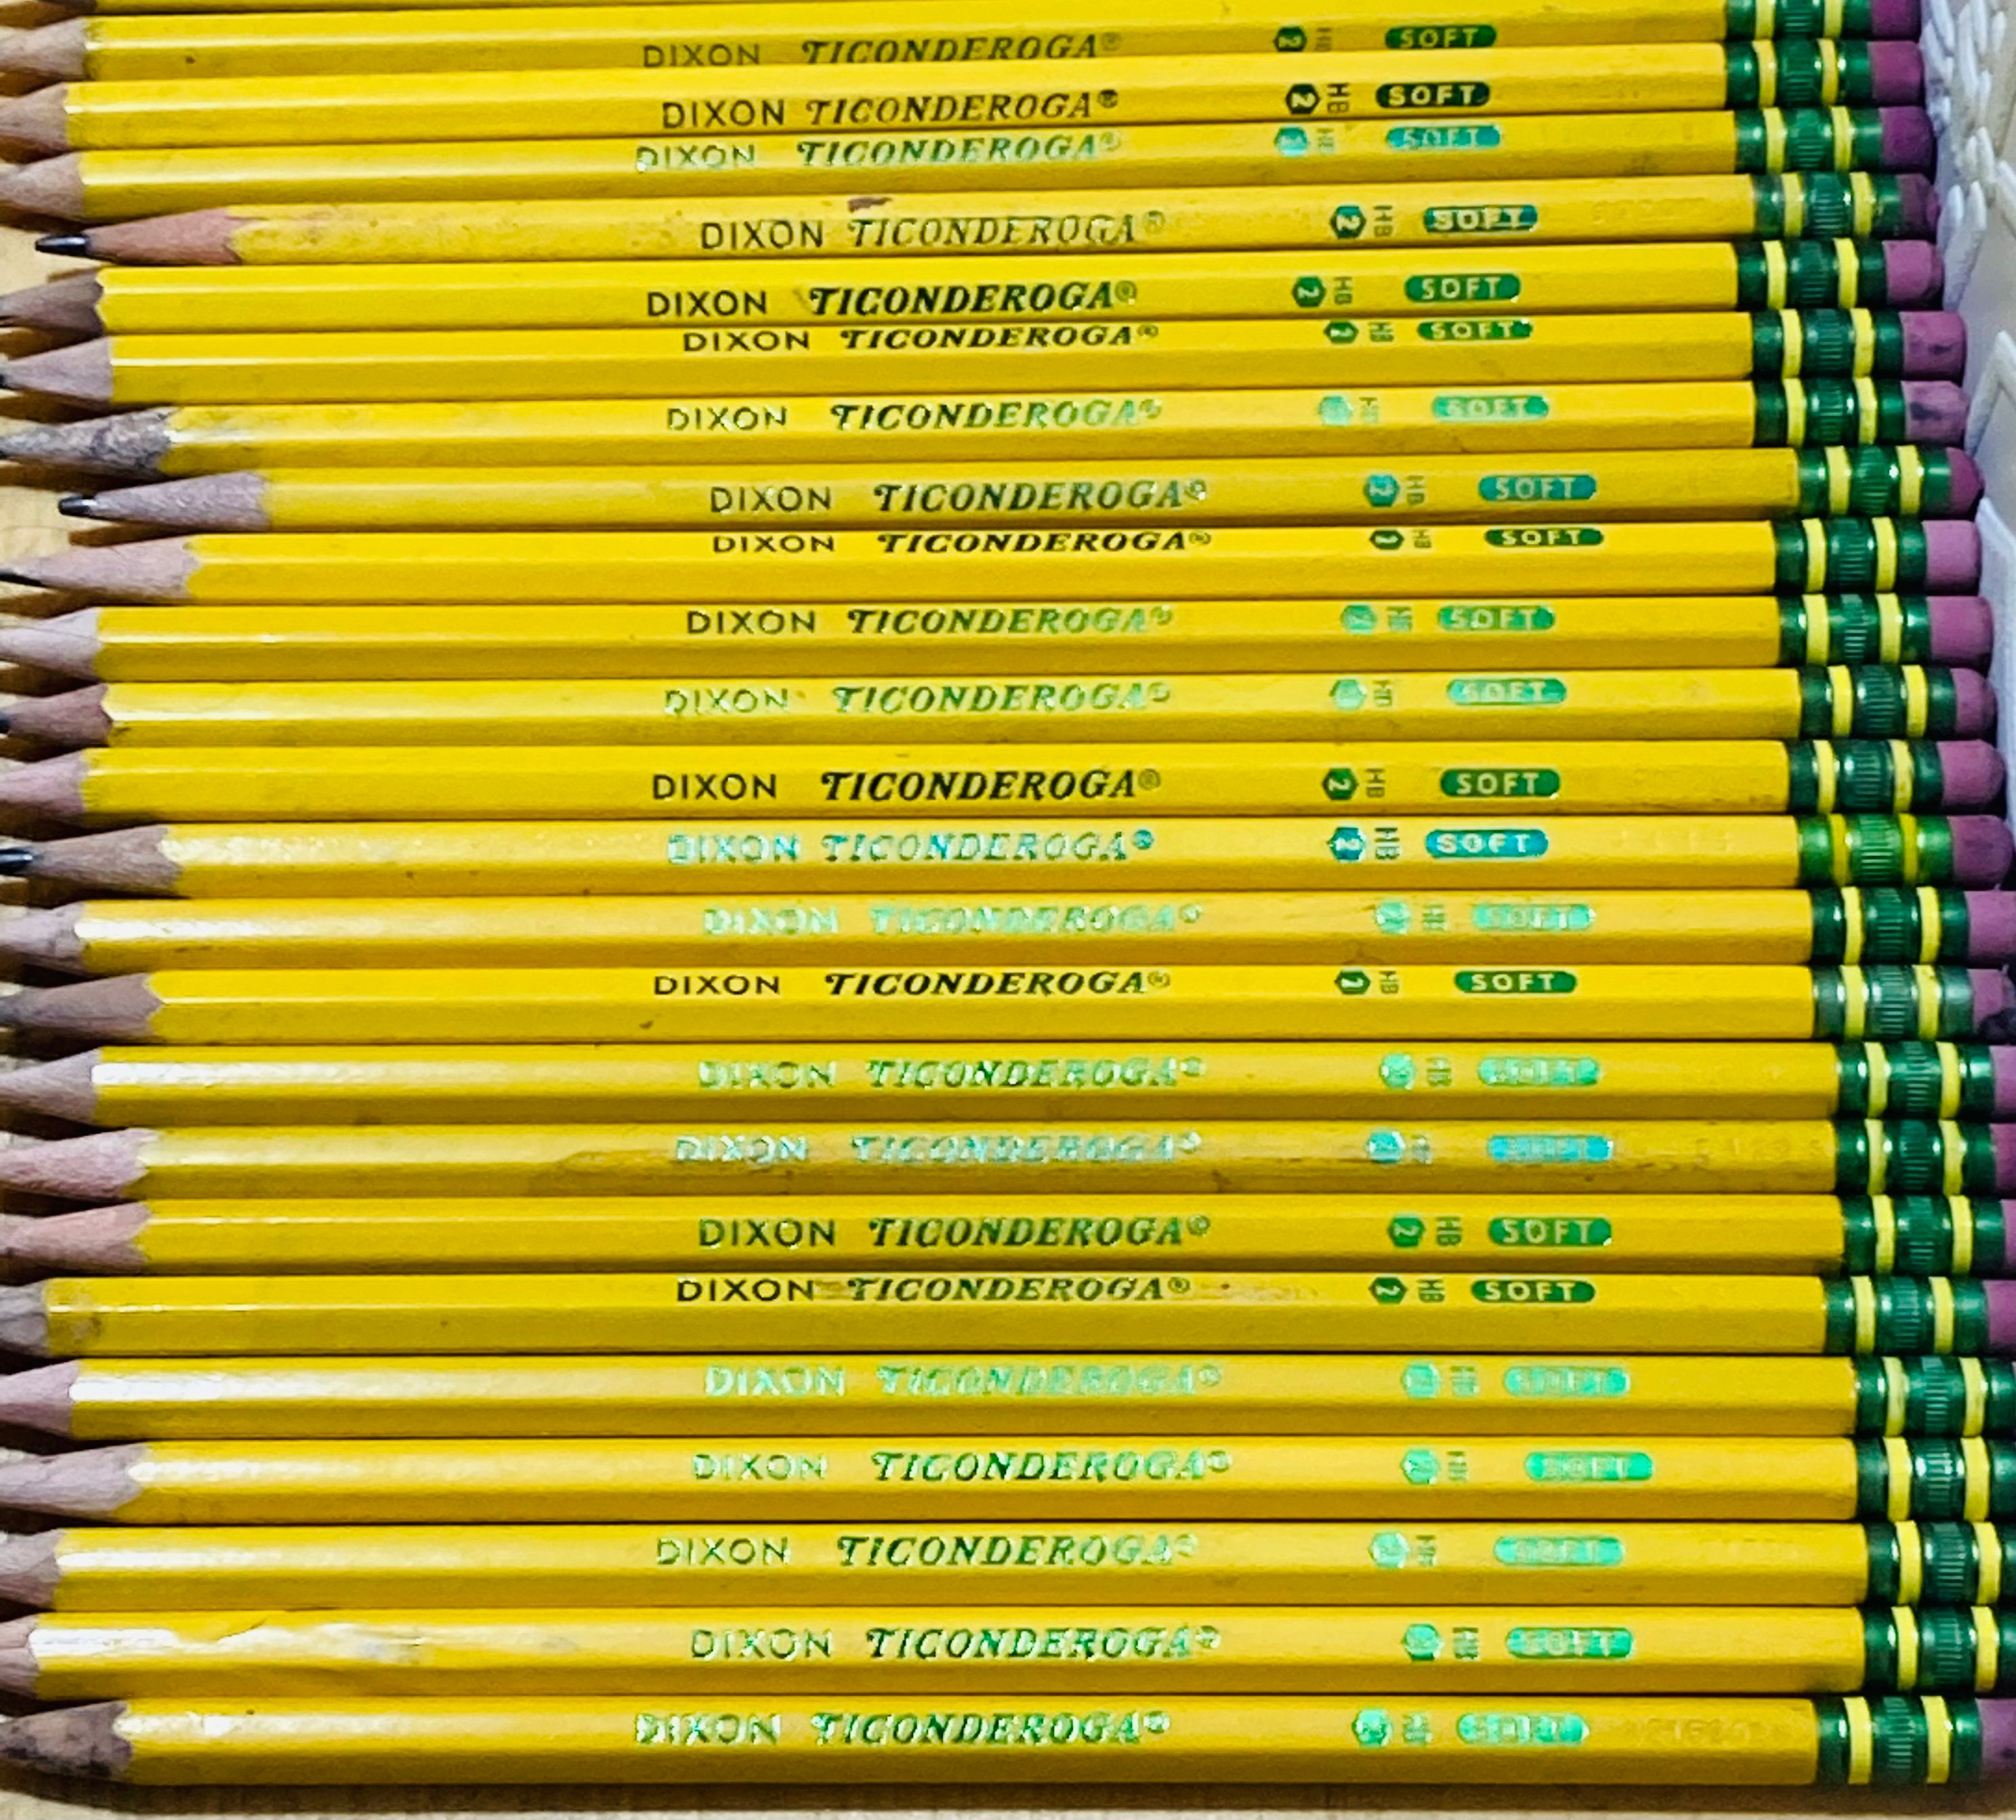 Lot of 25 Vintage 2 Ticonderoga Pencils Sharpened 